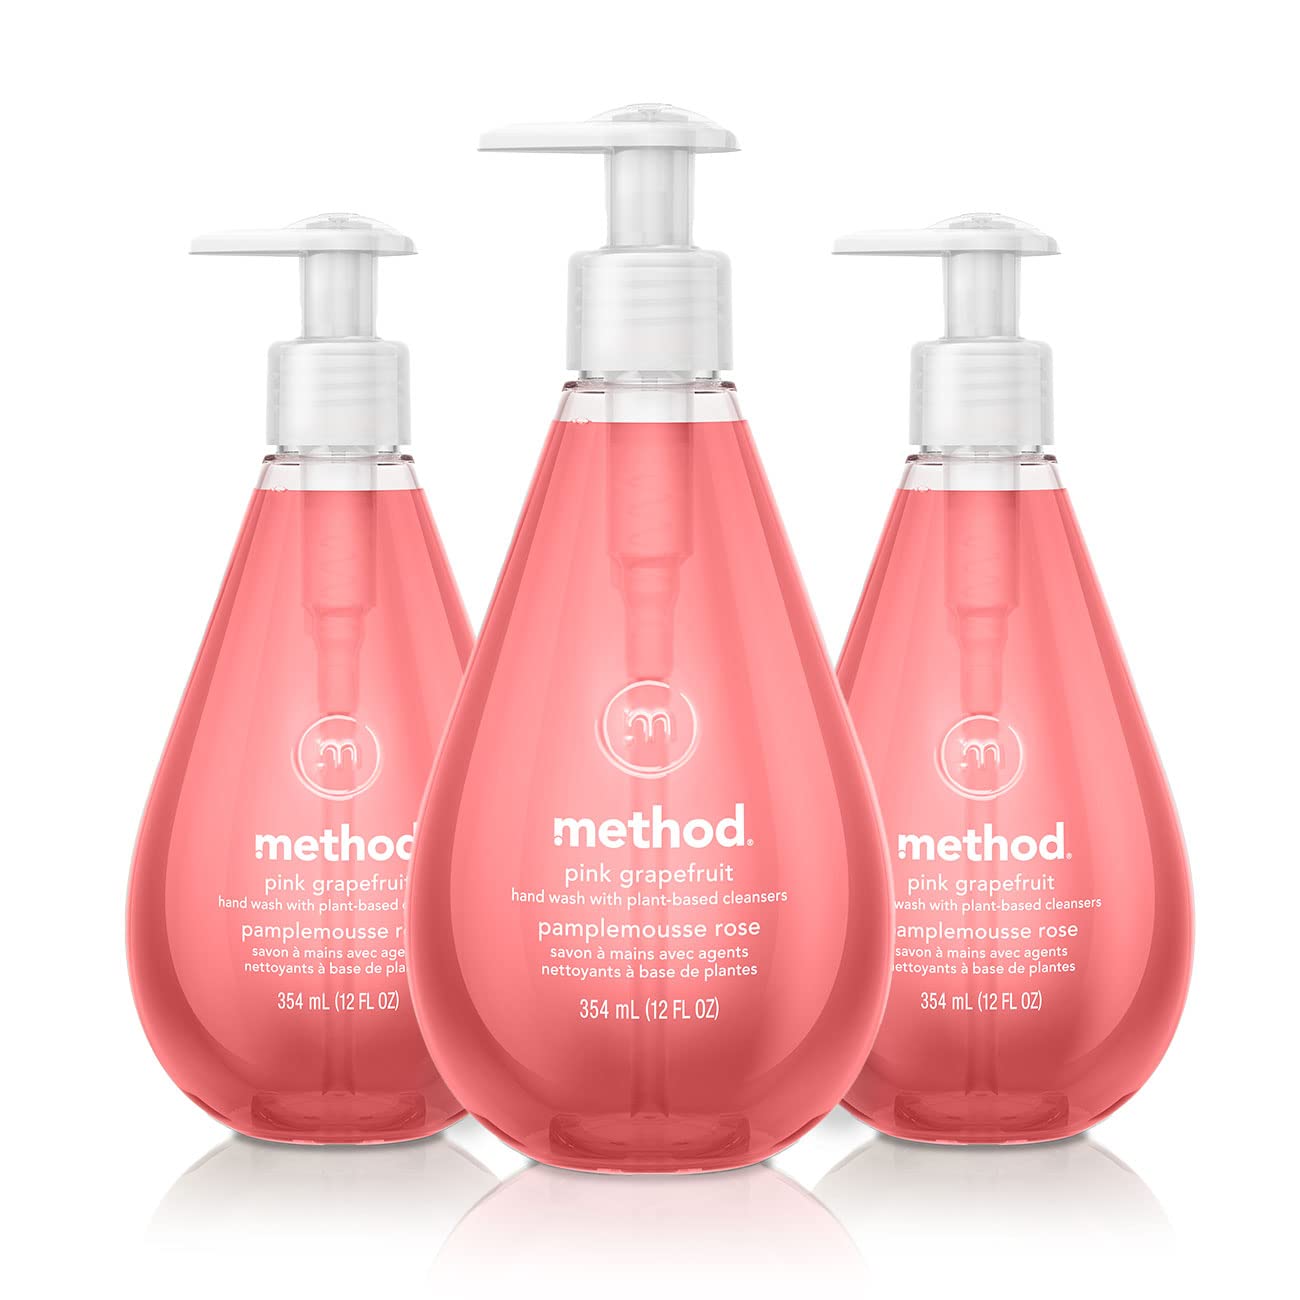 ''Method Gel Hand SOAP, Pink Grapefruit, 12 oz, 3 pack, Packaging May Vary''